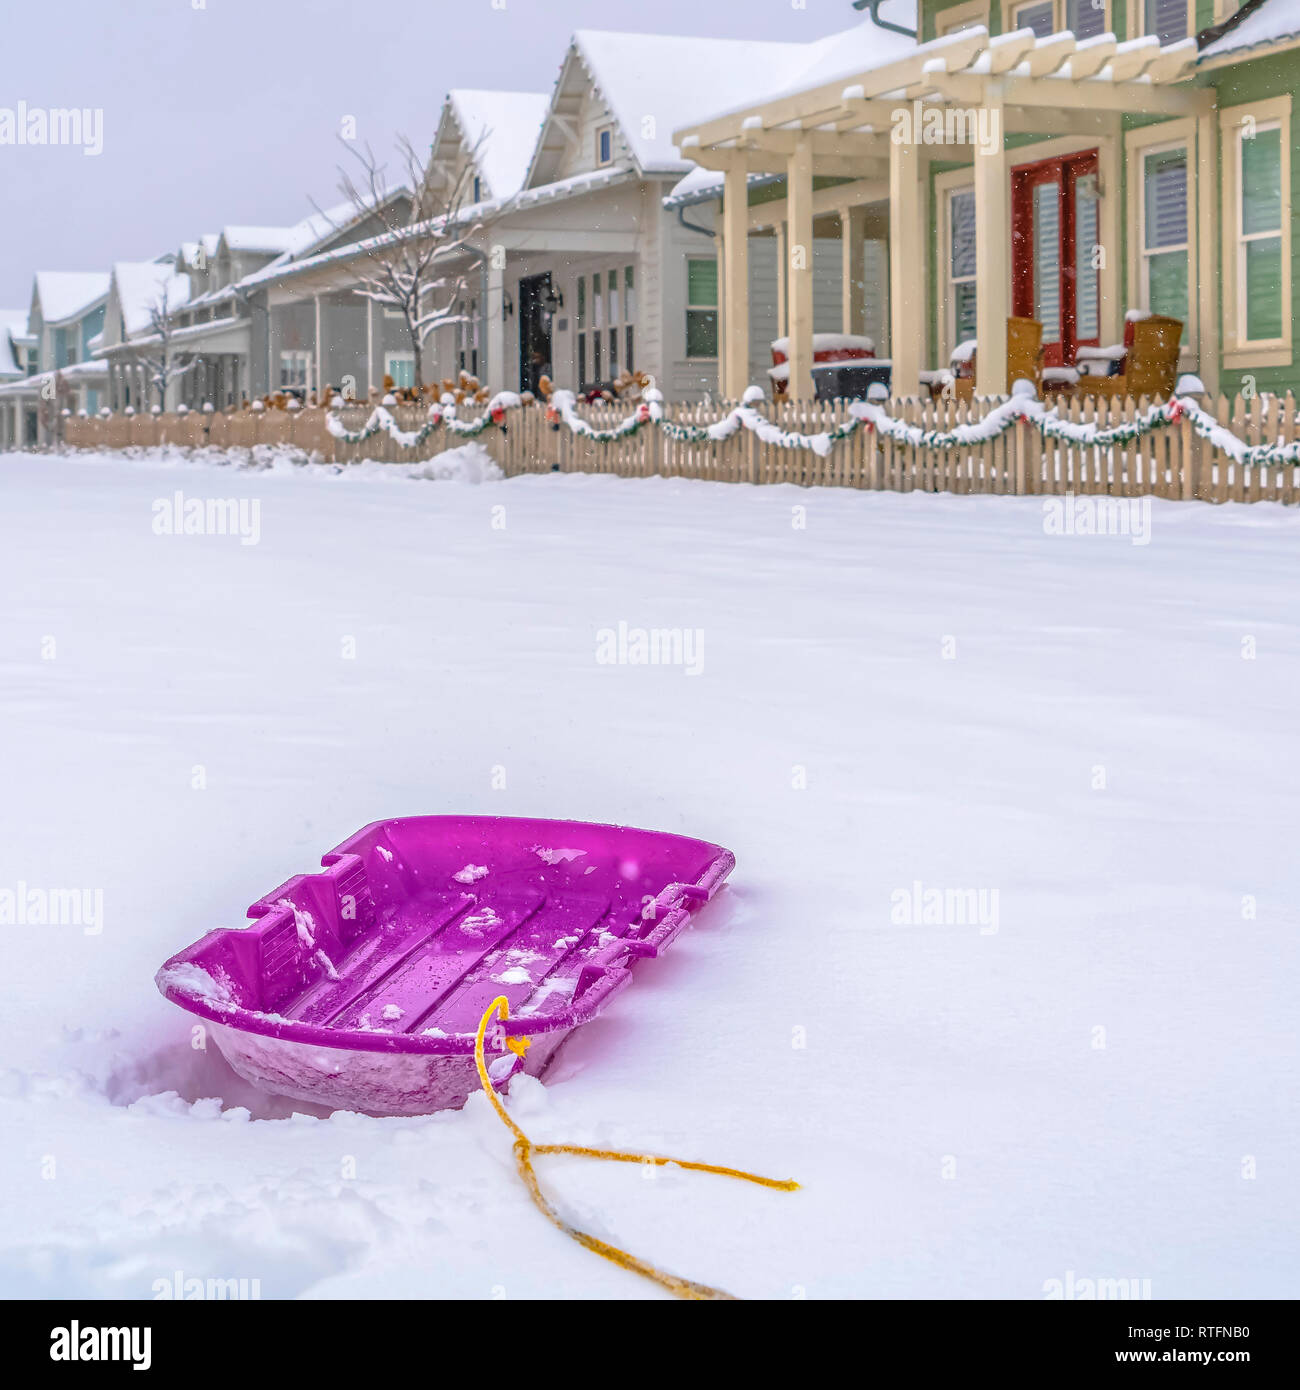 Lebendige lila Schlitten mit Schnee und Wohnungen Hintergrund. Nahaufnahme  einer lebendigen lila Schlitten auf einem Bett von frischem Schnee. Häuser  mit hölzernen Zaun und verschneiten r Stockfotografie - Alamy